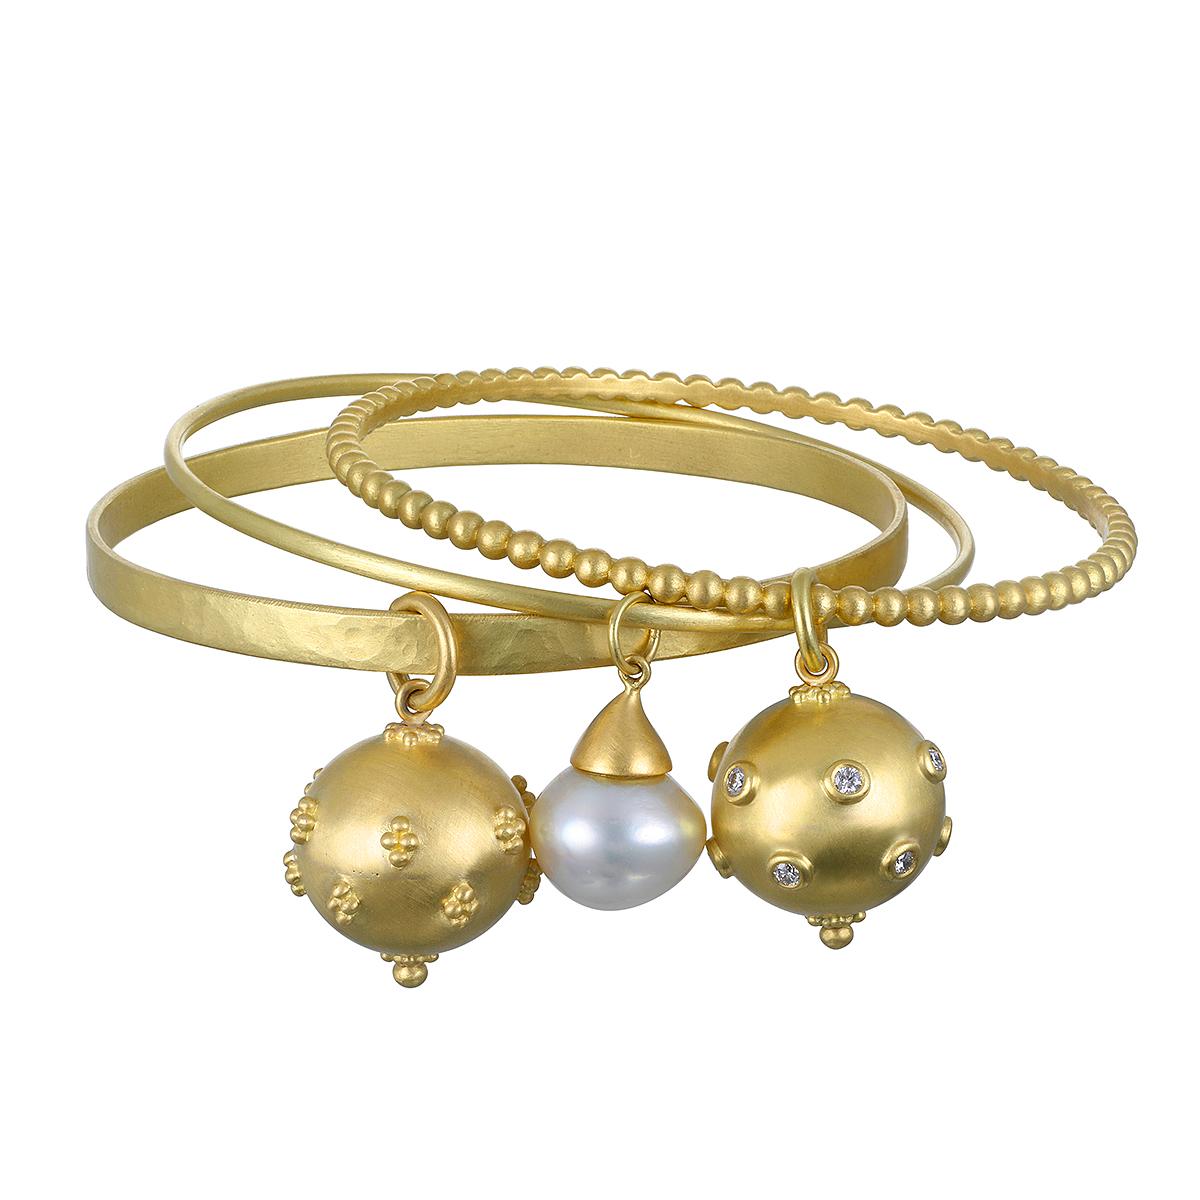 Le bracelet en perles de granulation en or 18 carats avec breloque boule de diamant de Faye Kim ne manquera pas d'alimenter les conversations, qu'il soit porté seul ou empilé avec d'autres bracelets.

Diamètre du charme  .75